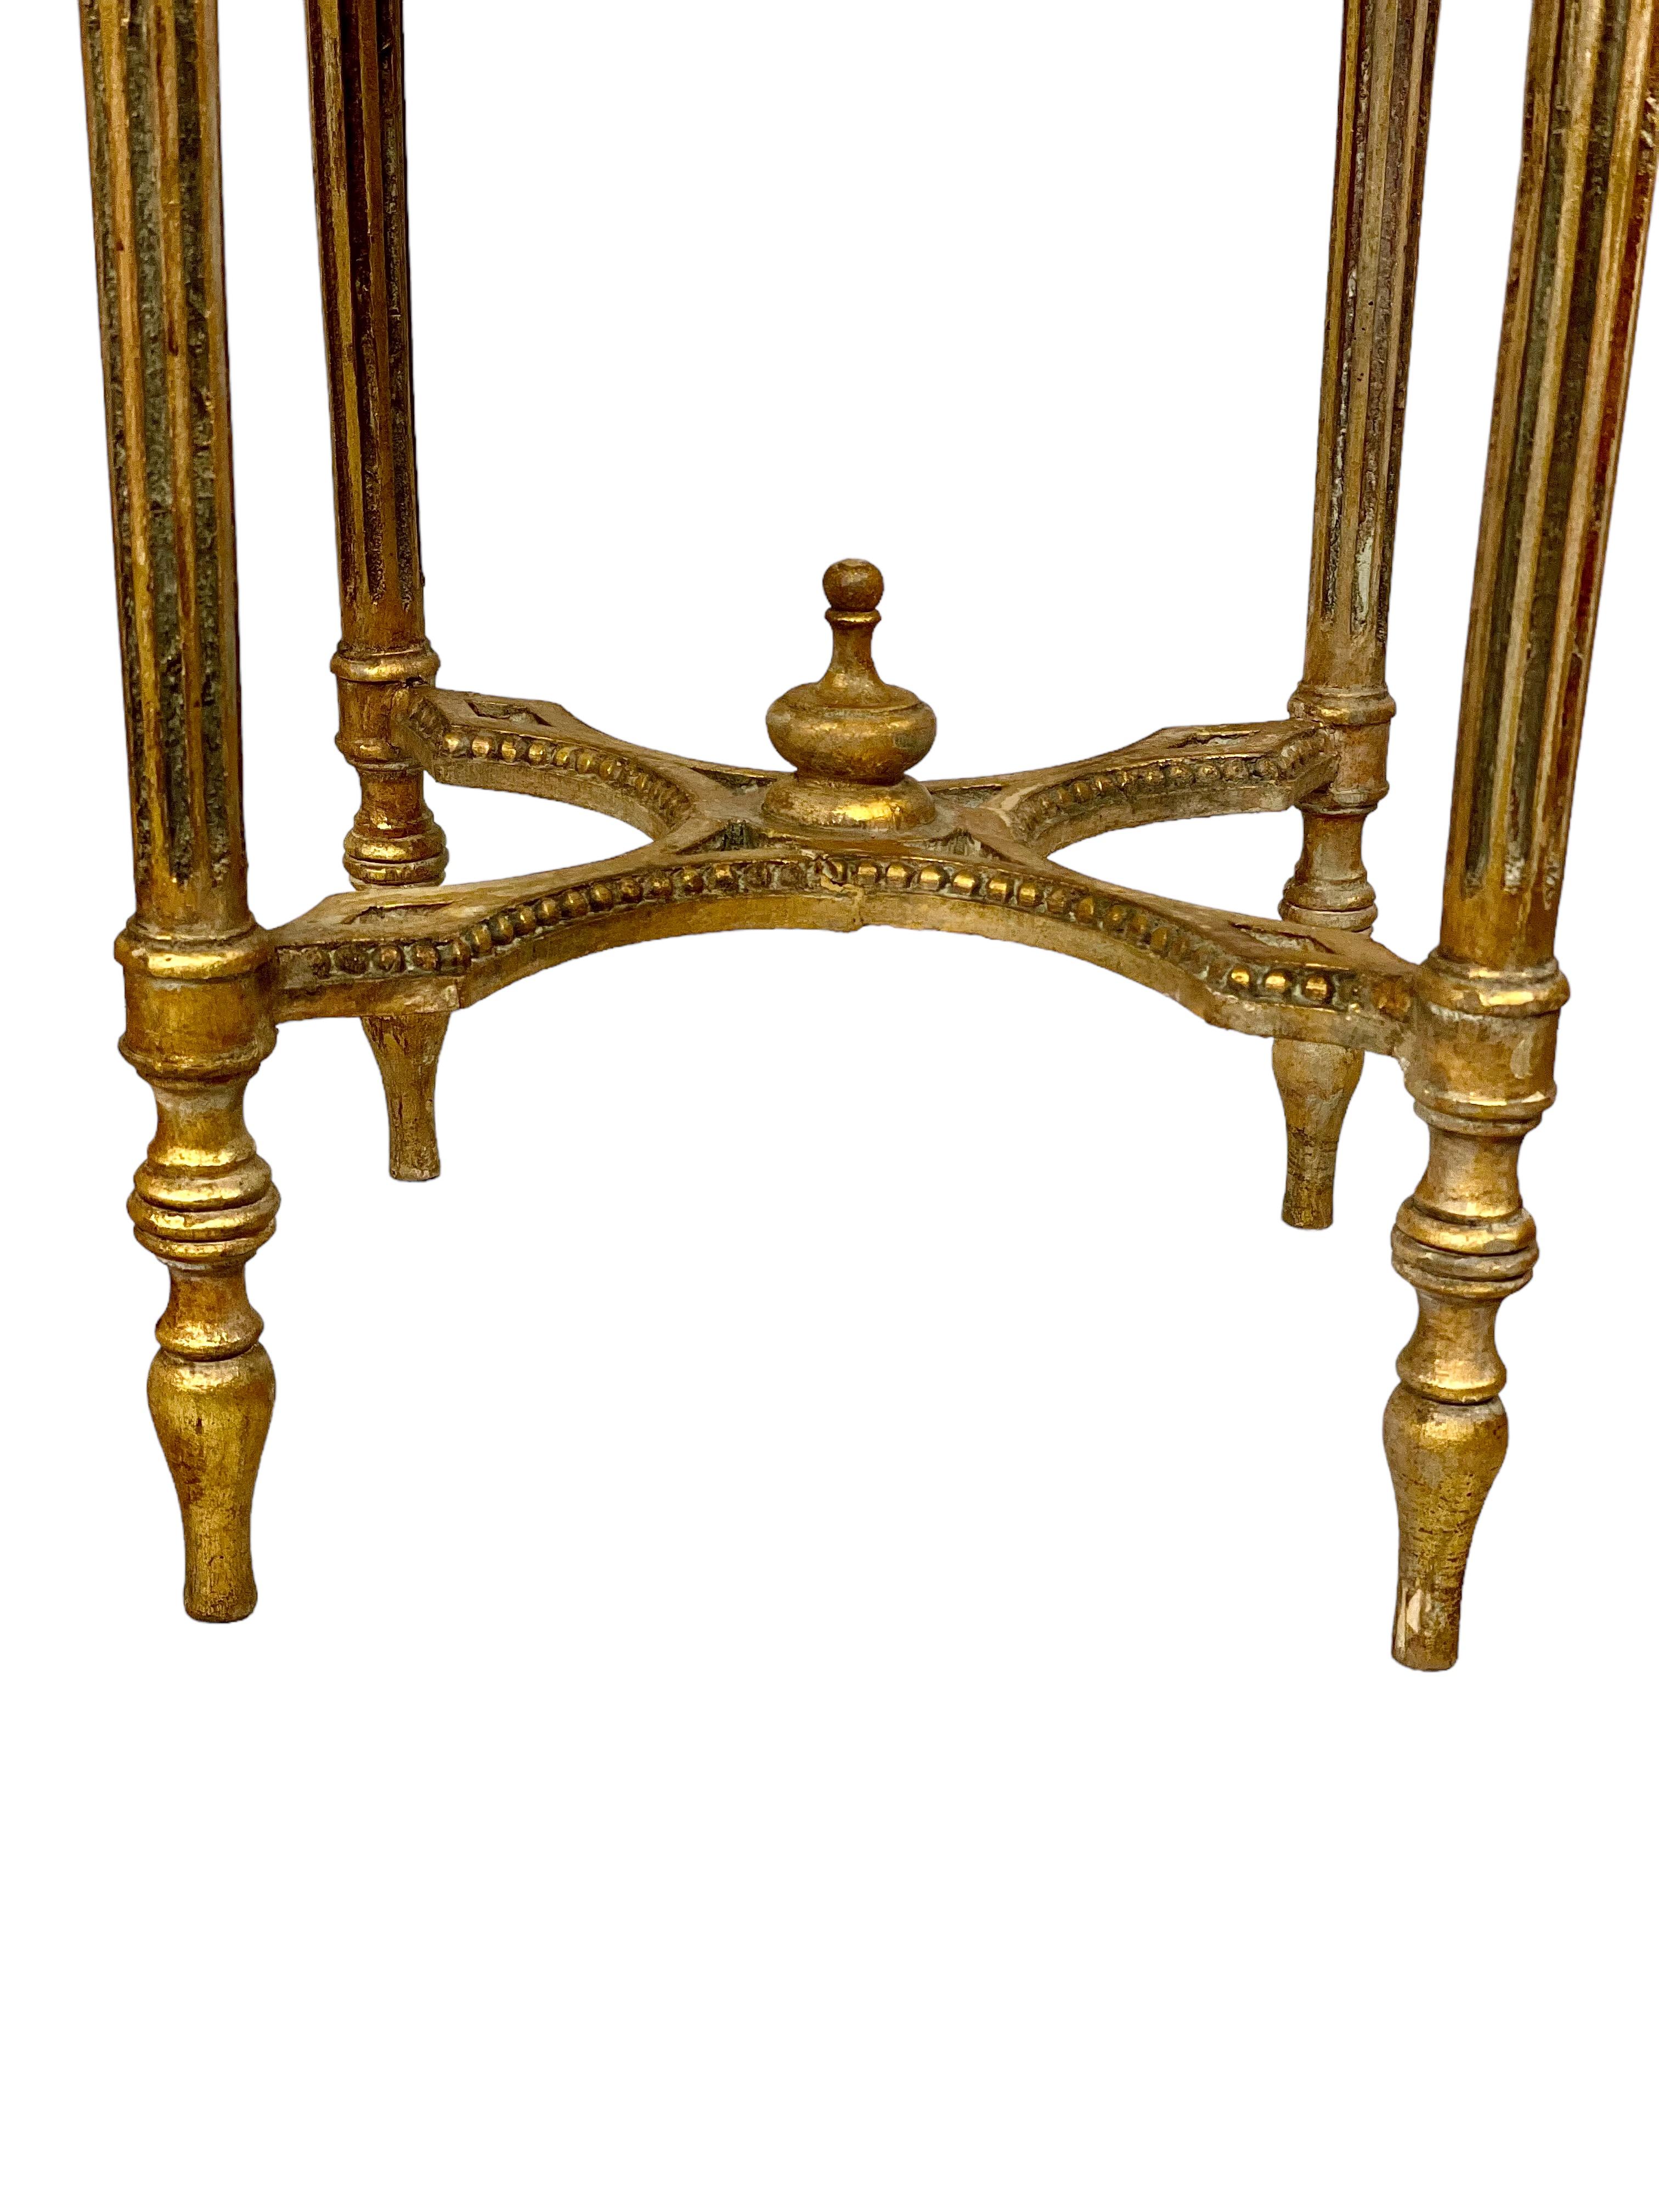 Dieser fabelhafte Gueridon-Tisch aus Goldholz und Marmor im Louis XVI-Stil stammt aus dem 19. Jahrhundert und verfügt über eine beeindruckende Ablagefläche aus dunkelgrünem Pyrenäenmarmor mit profilierten Kanten. Darüber befindet sich eine reich